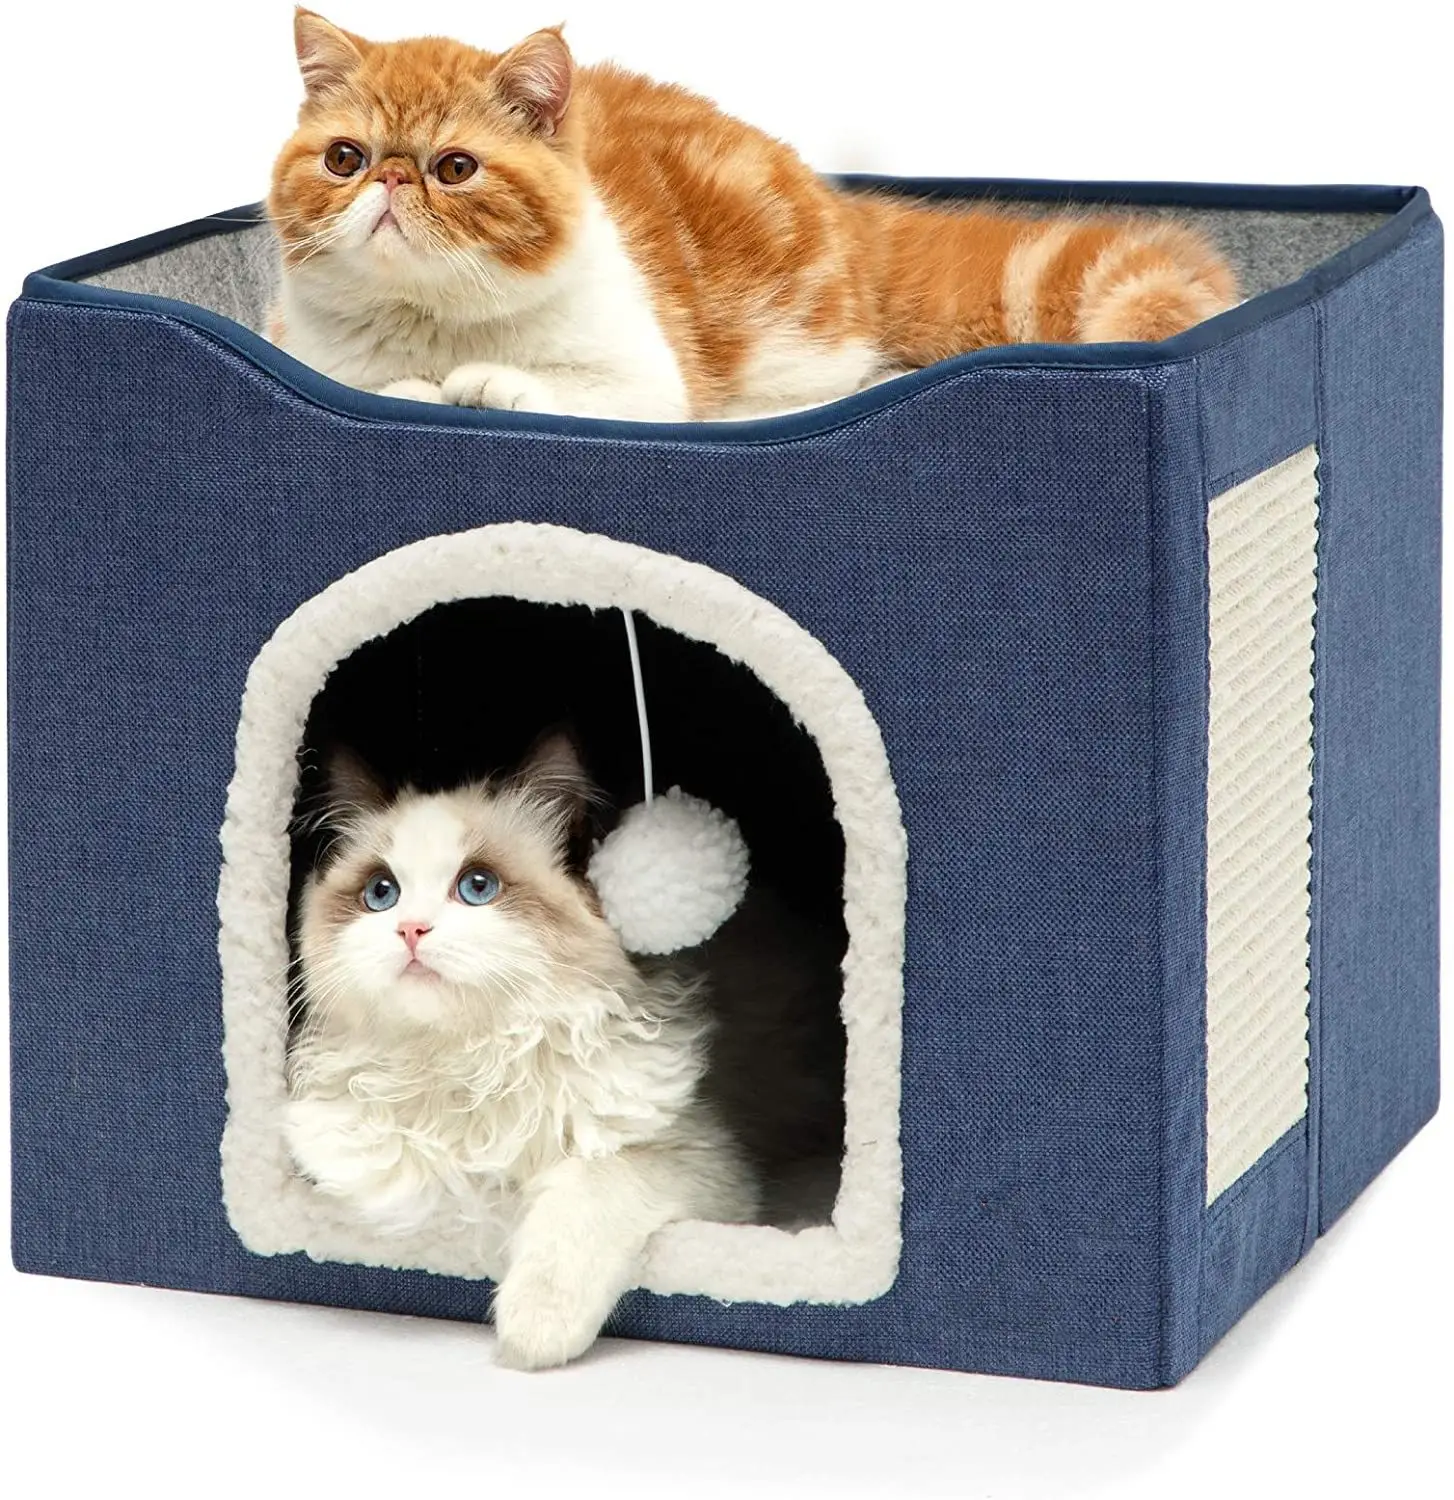 Tikar lipat lembut dalam ruangan, sarang furnitur dapat dilipat perlengkapan tempat tidur produk kandang anjing kucing rumah hewan peliharaan tempat tidur gua kucing tempat tidur